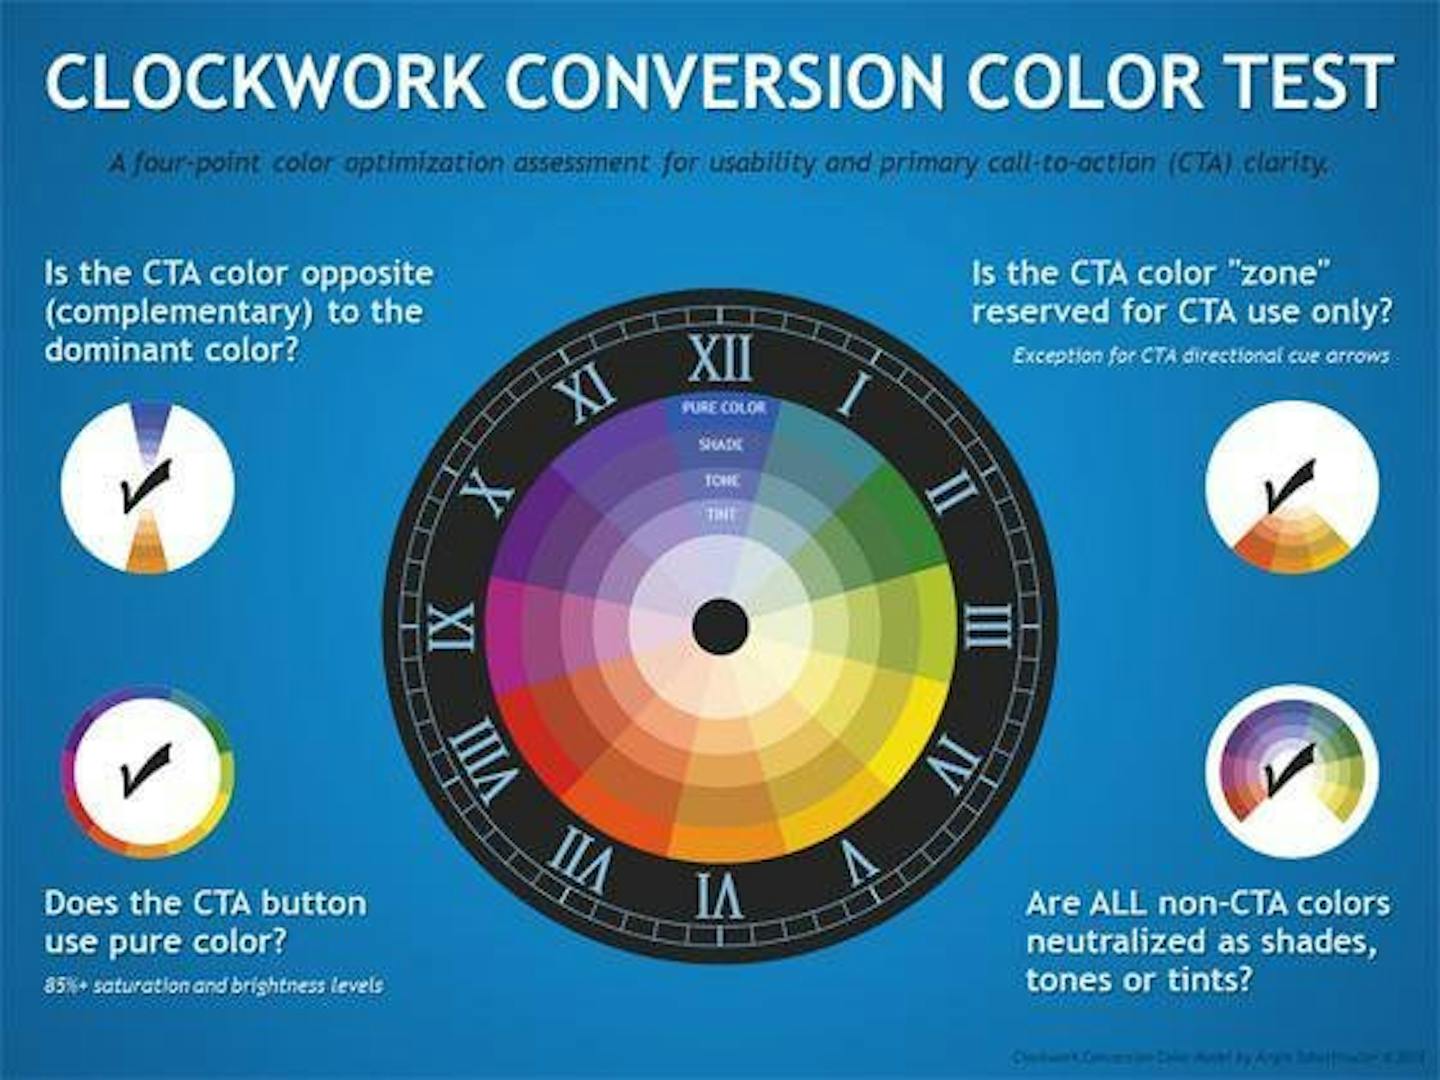 Clockwork-Conversion-color-test-3.jpg